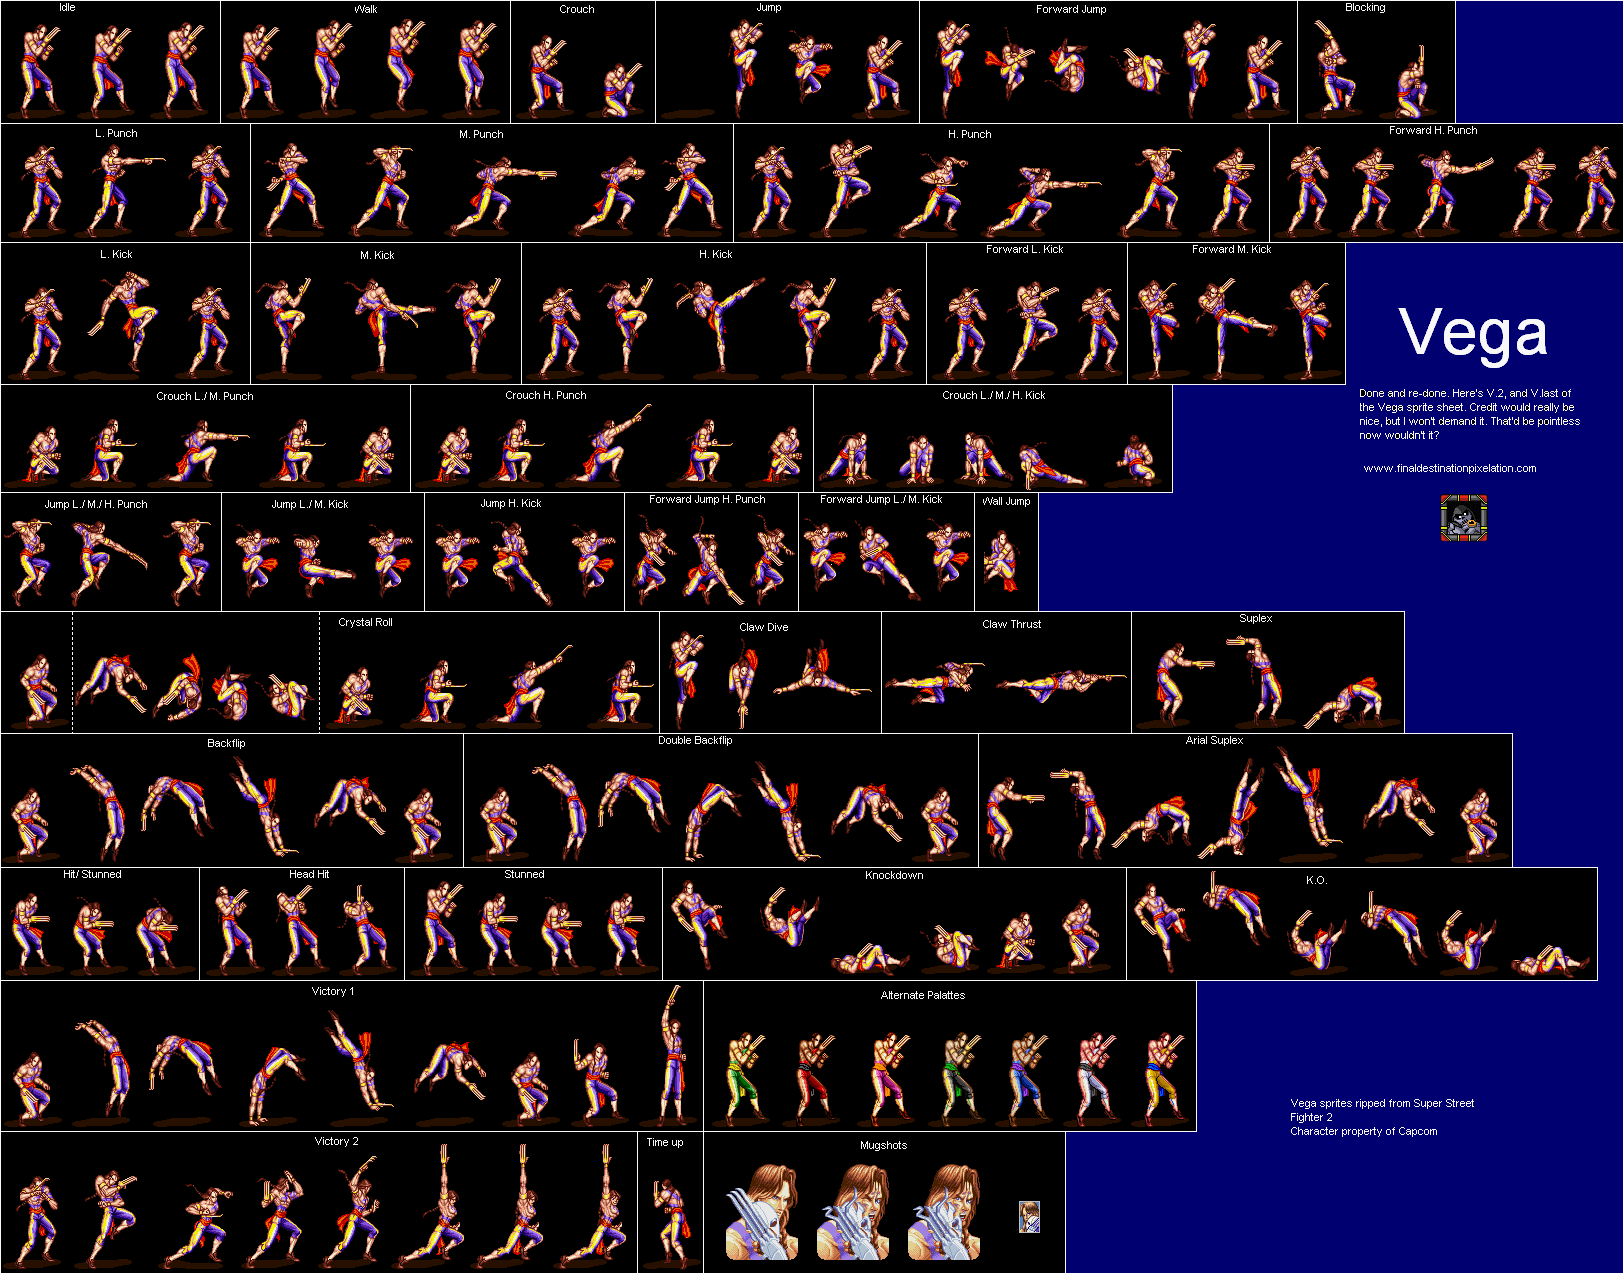 Super Street Fighter IV - Theme of Vega 